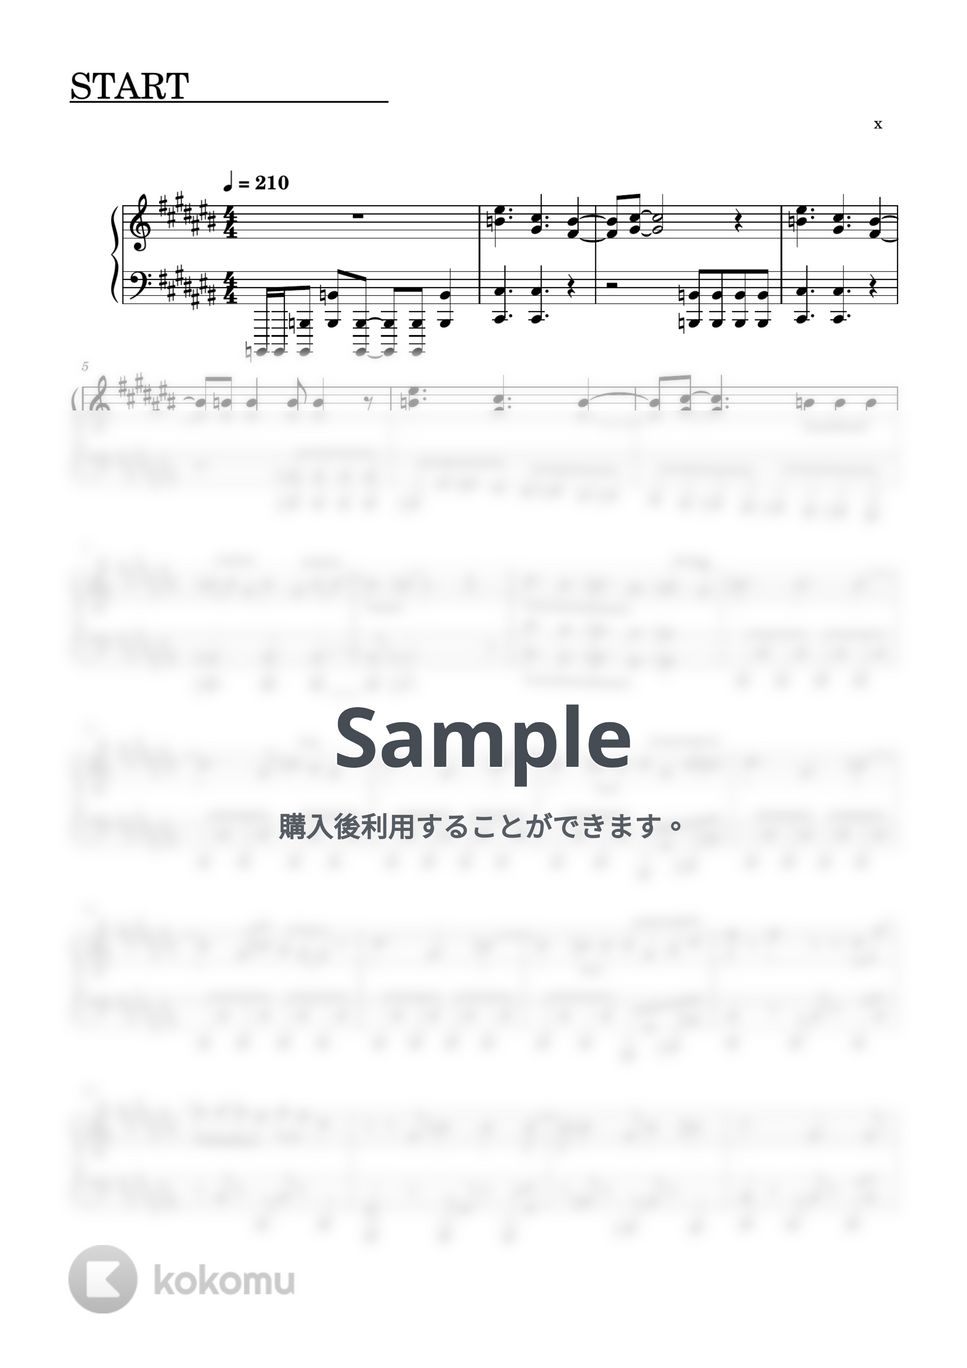 すとぷり - START (ピアノソロ譜) by 萌や氏